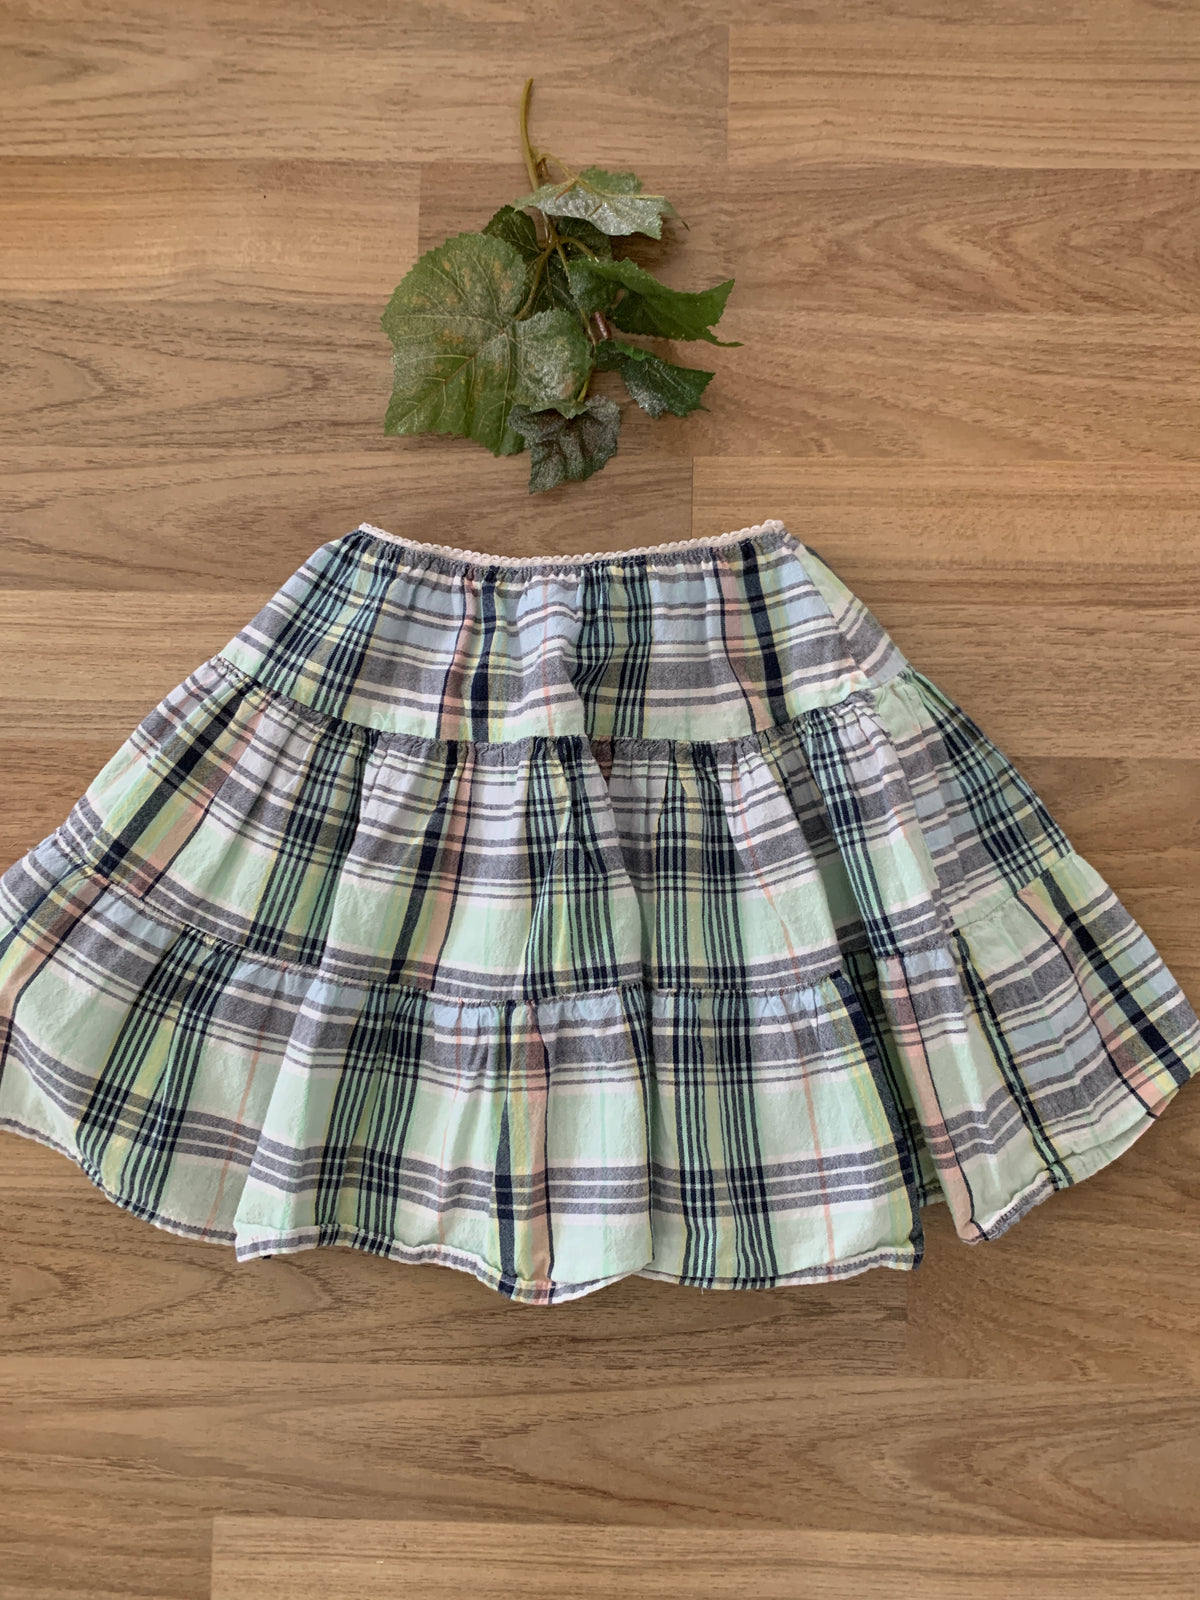 Skirt (Girls Size 5-6)